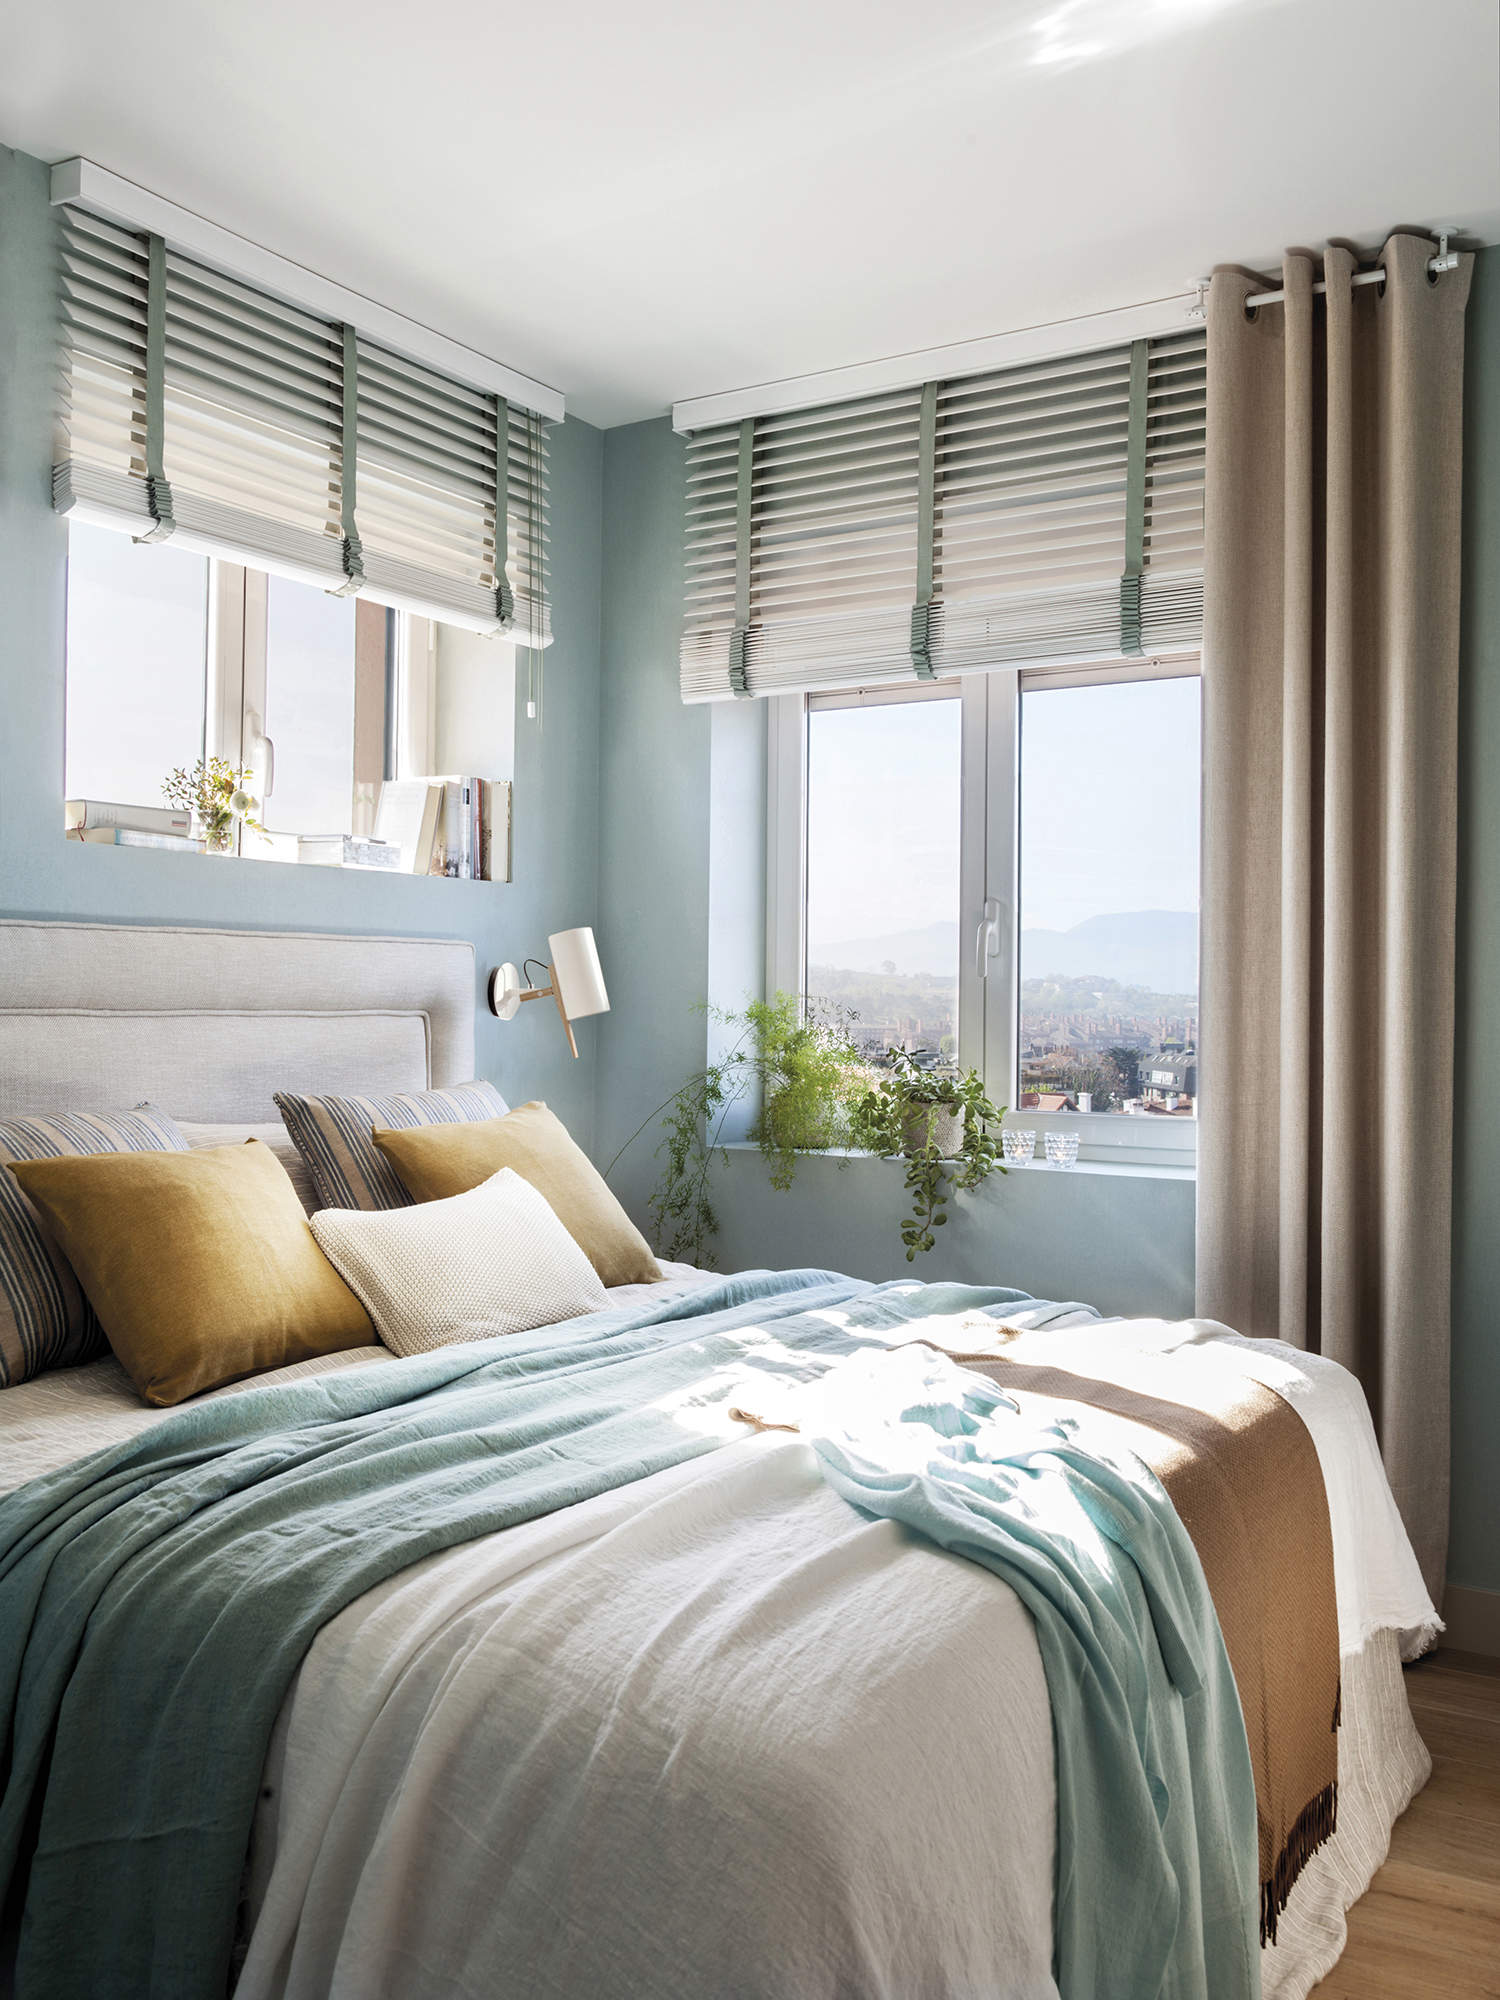 Dormitorio decorado en azul.